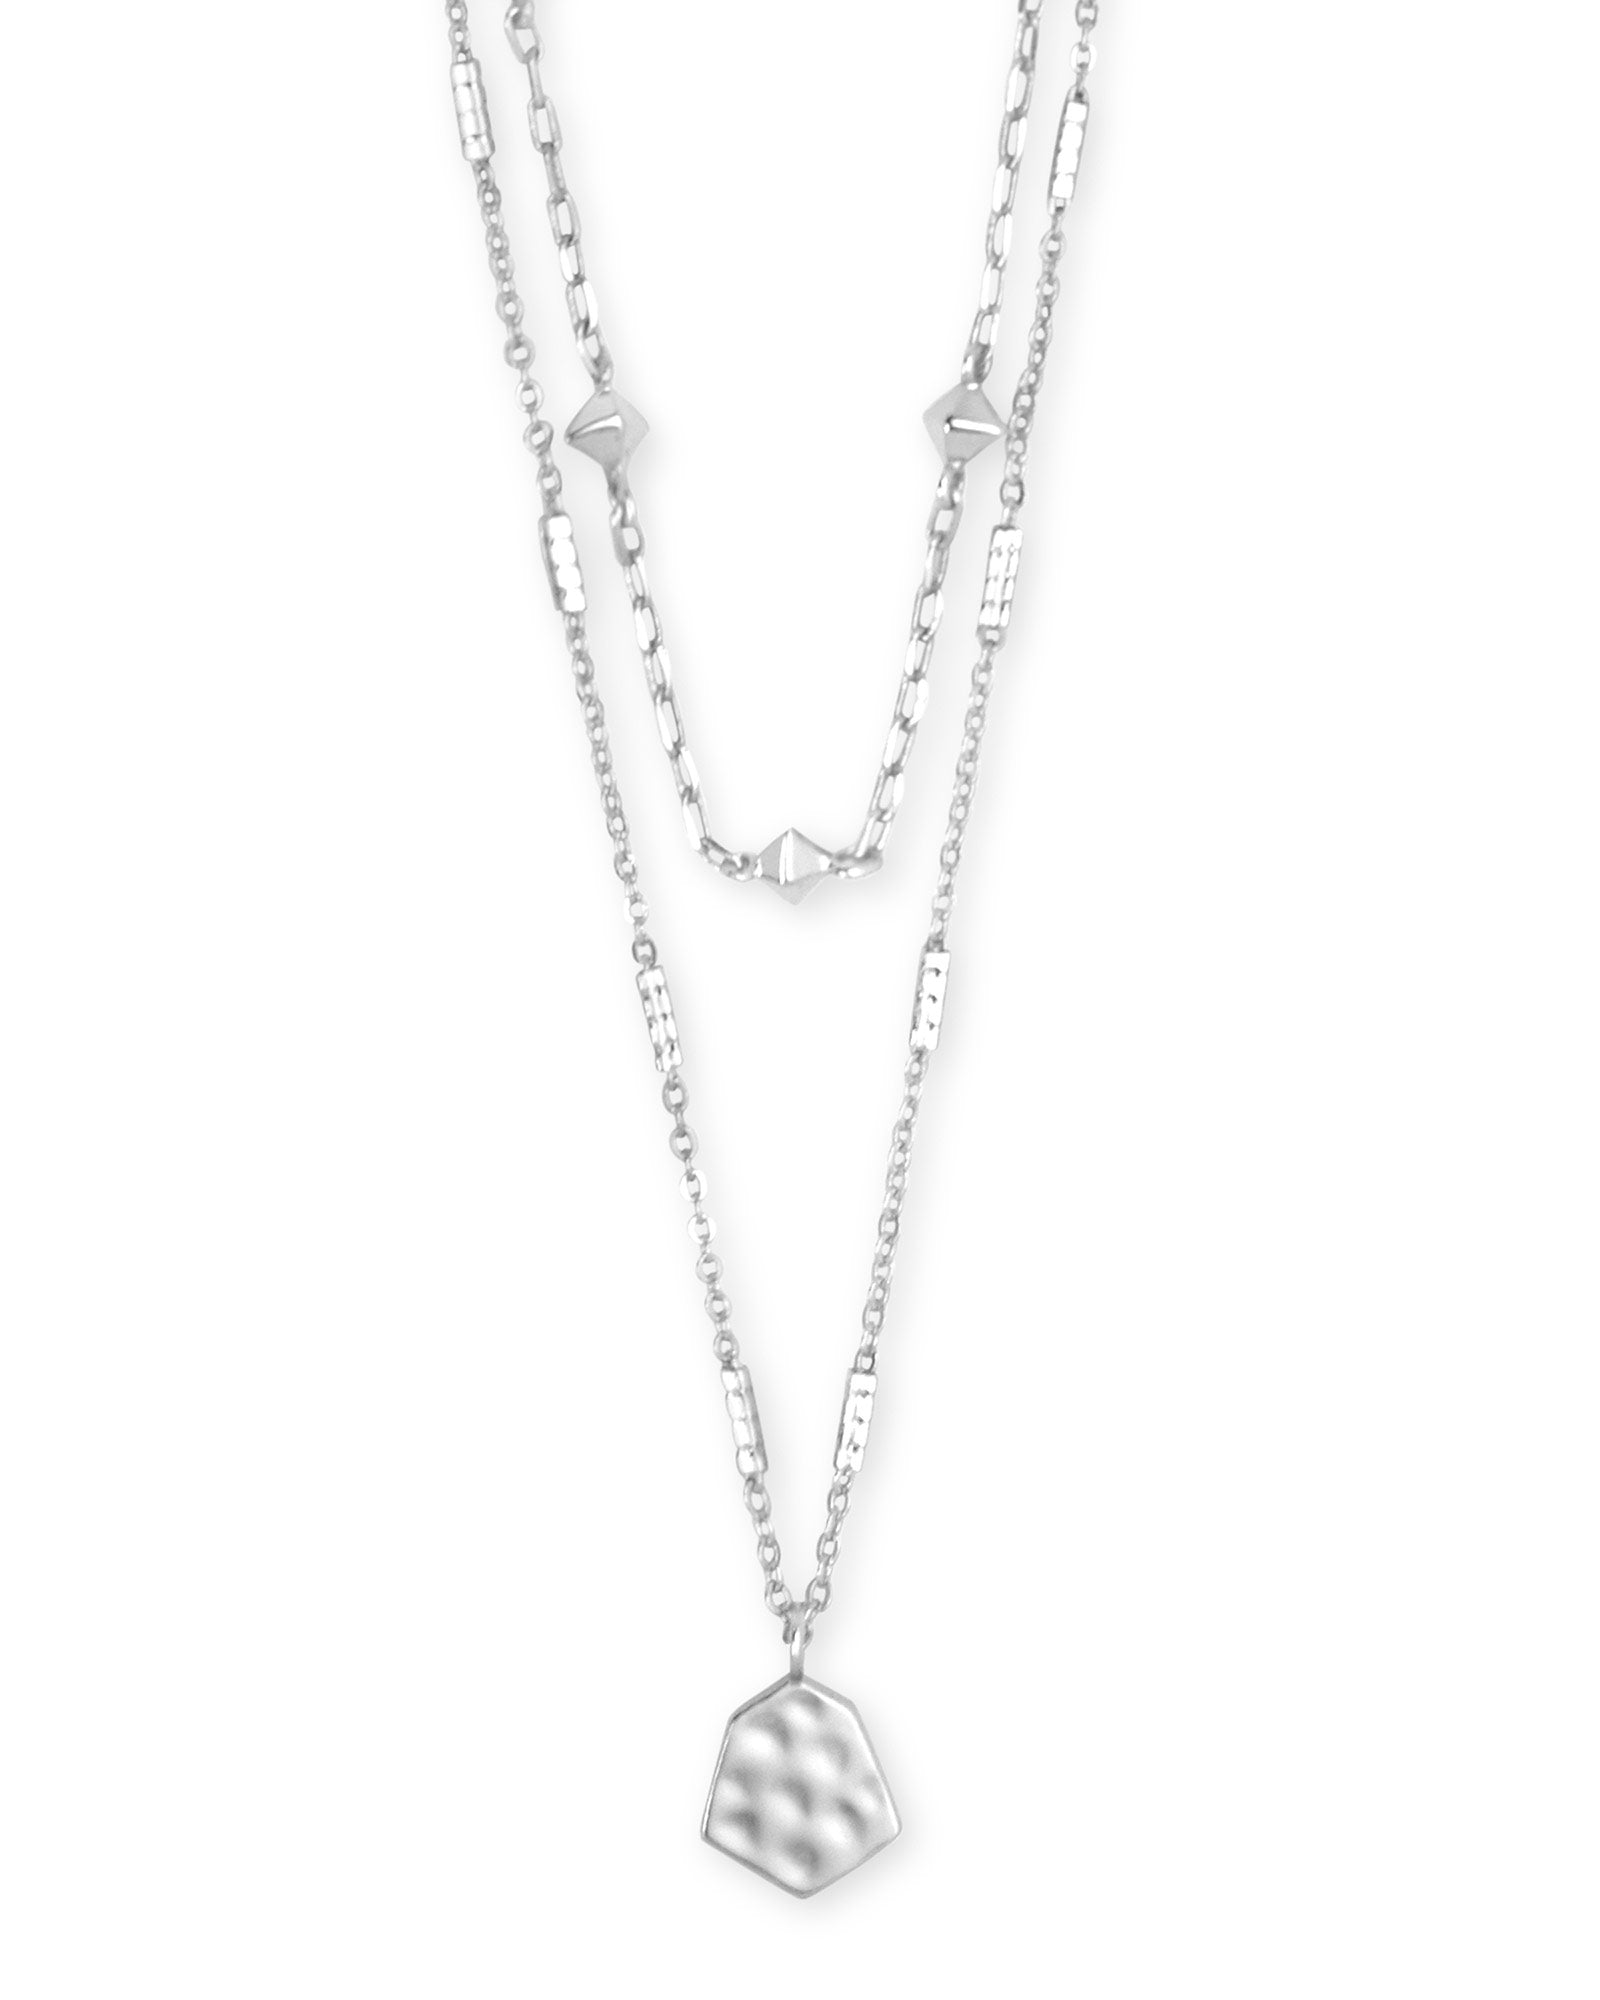 Clove Multi Strand Necklace - Bright Silver